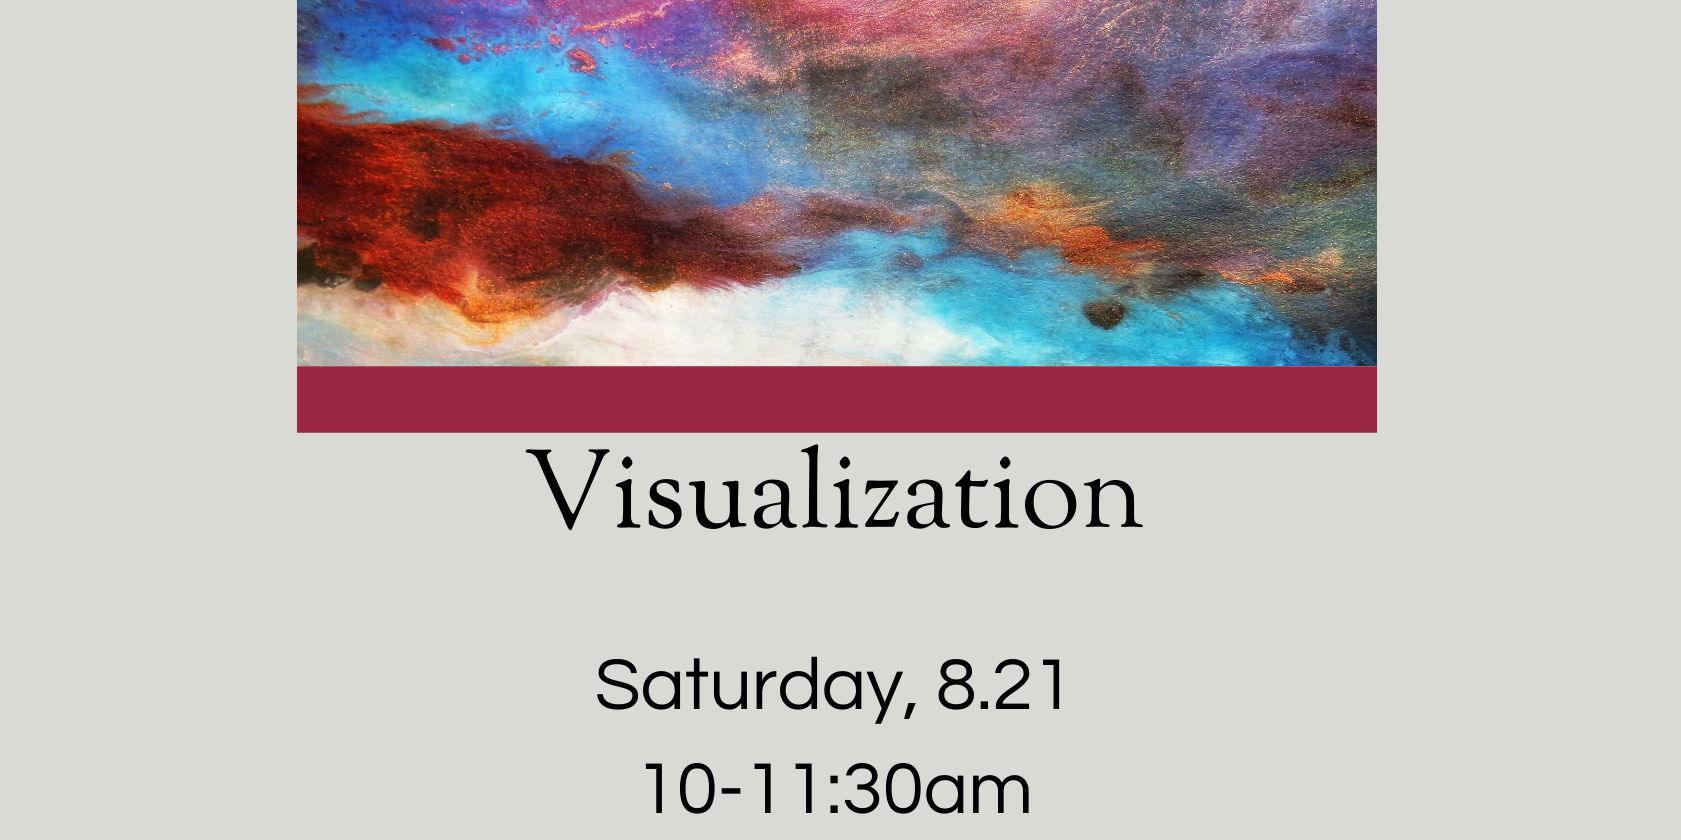 Visualization promotional image